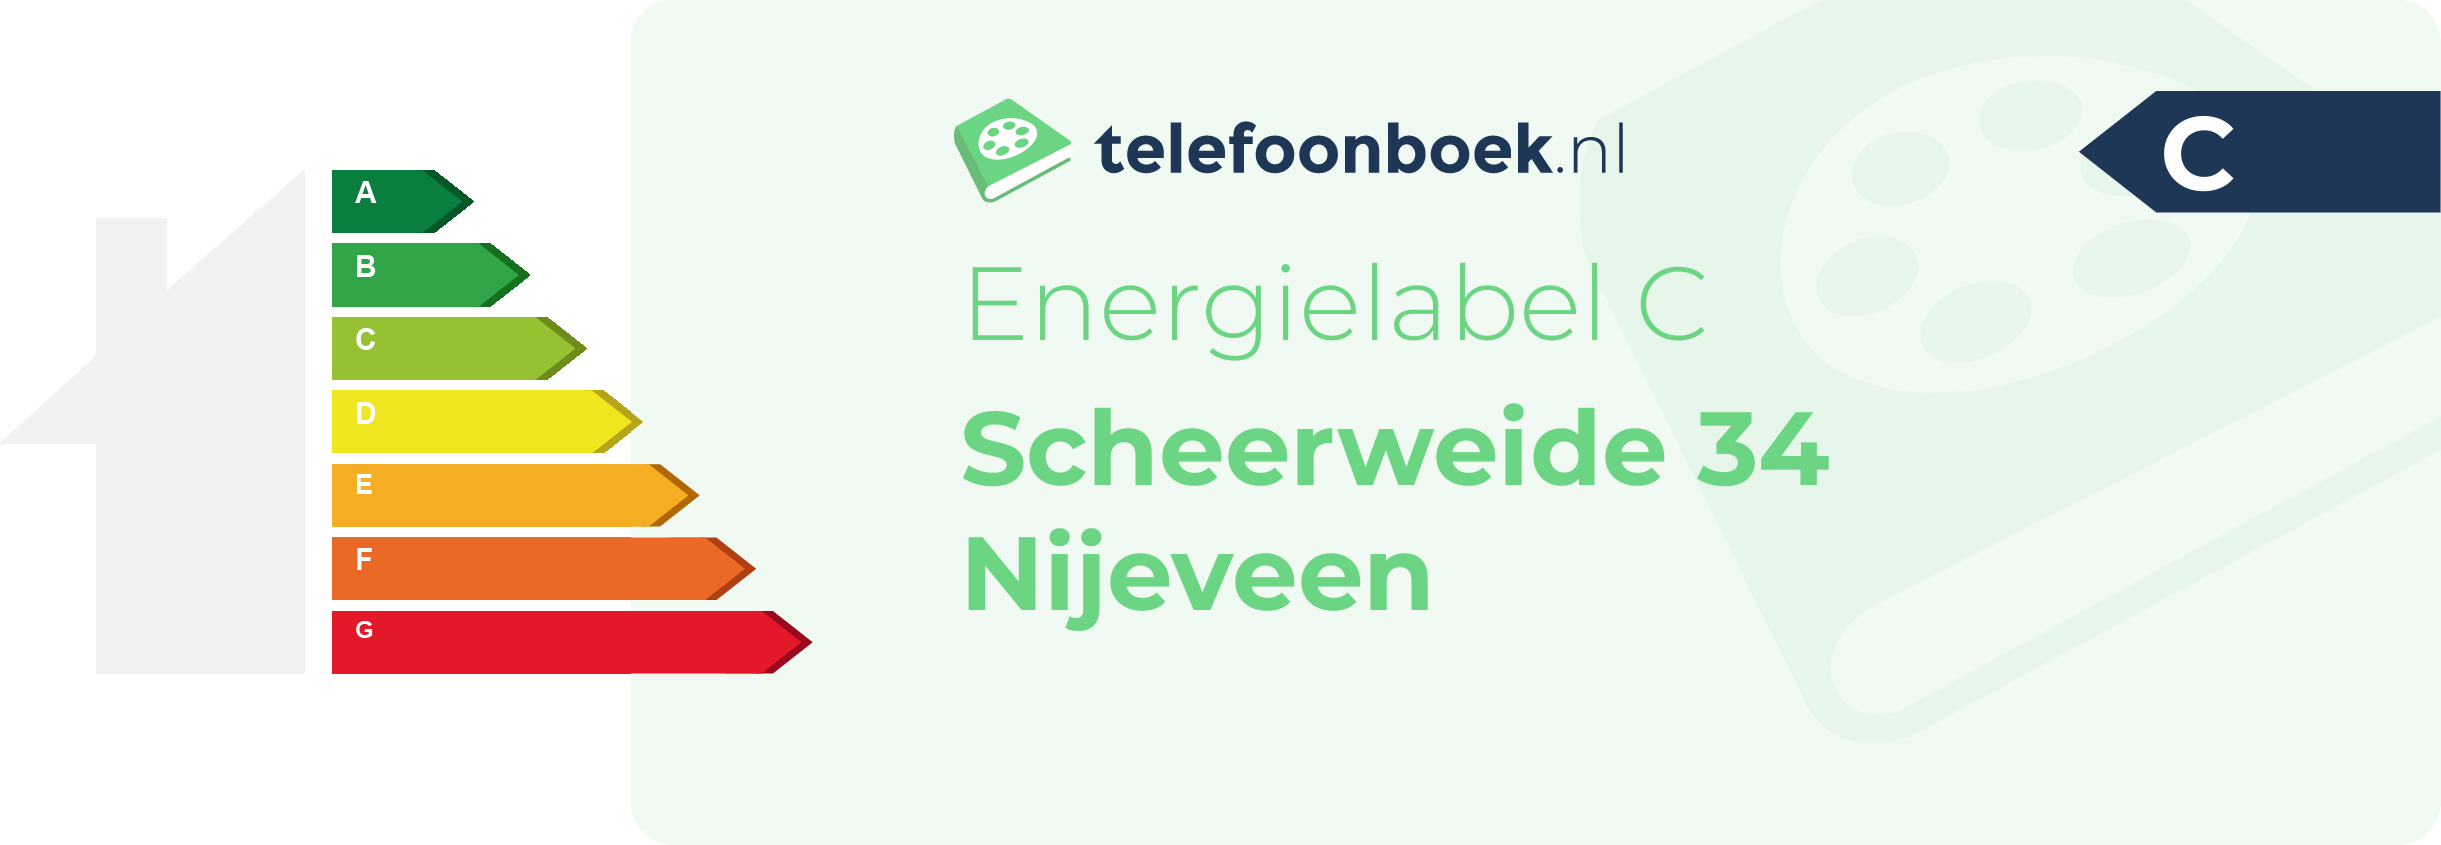 Energielabel Scheerweide 34 Nijeveen